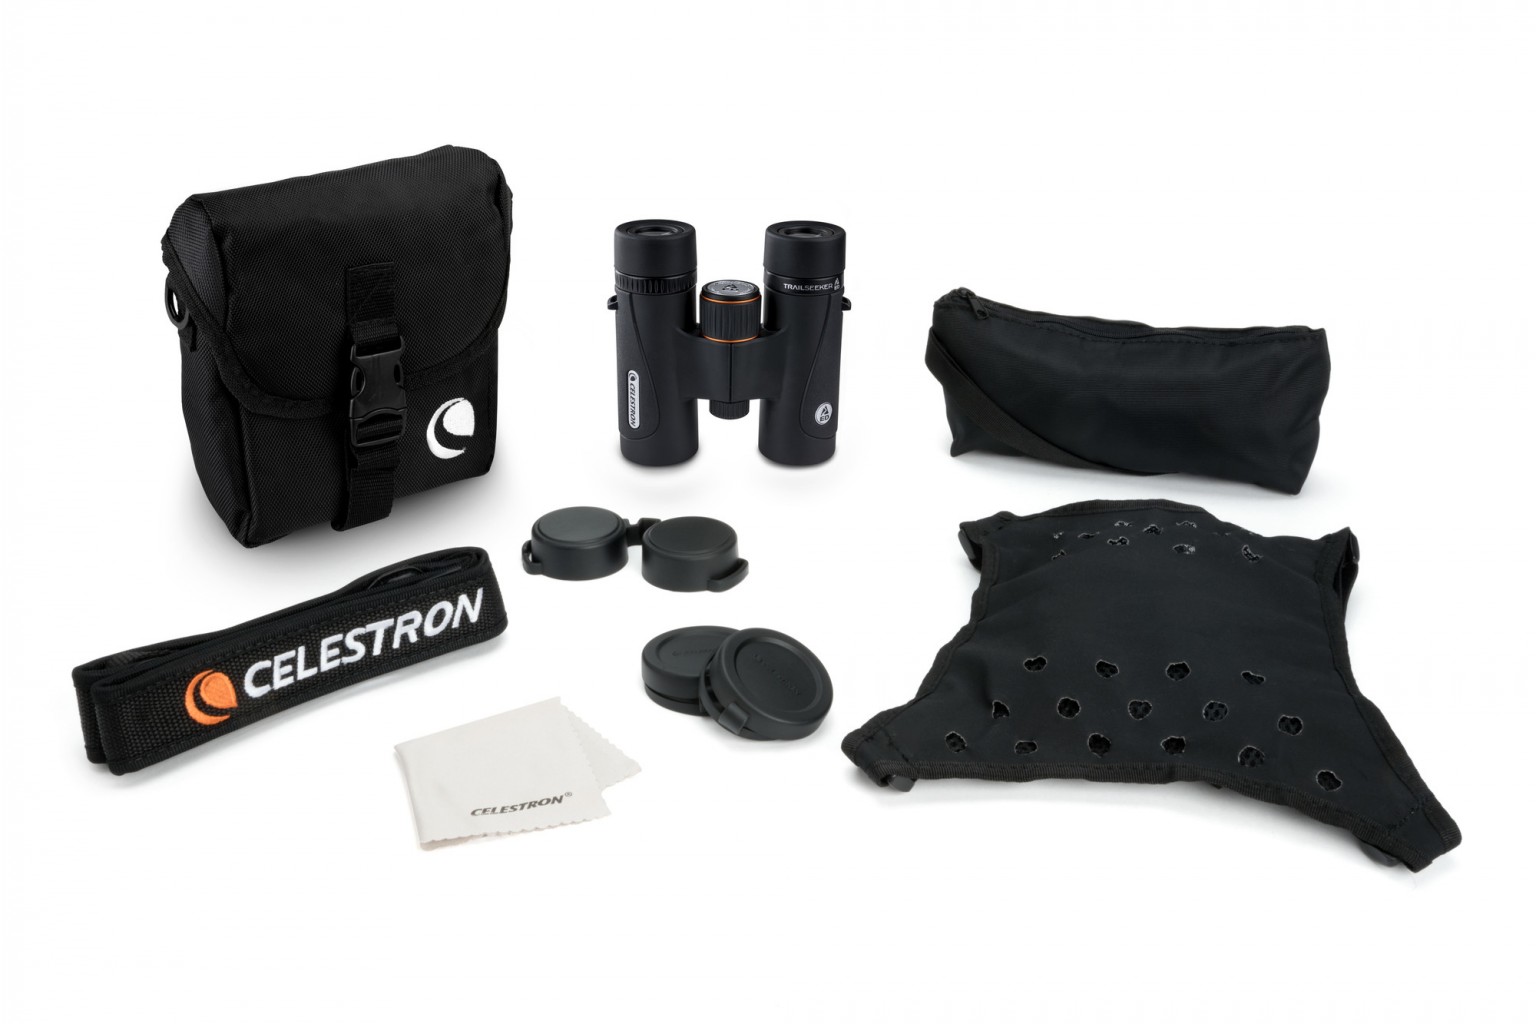 Celestron TrailSeeker ED 8x32mm Roof Binoculars